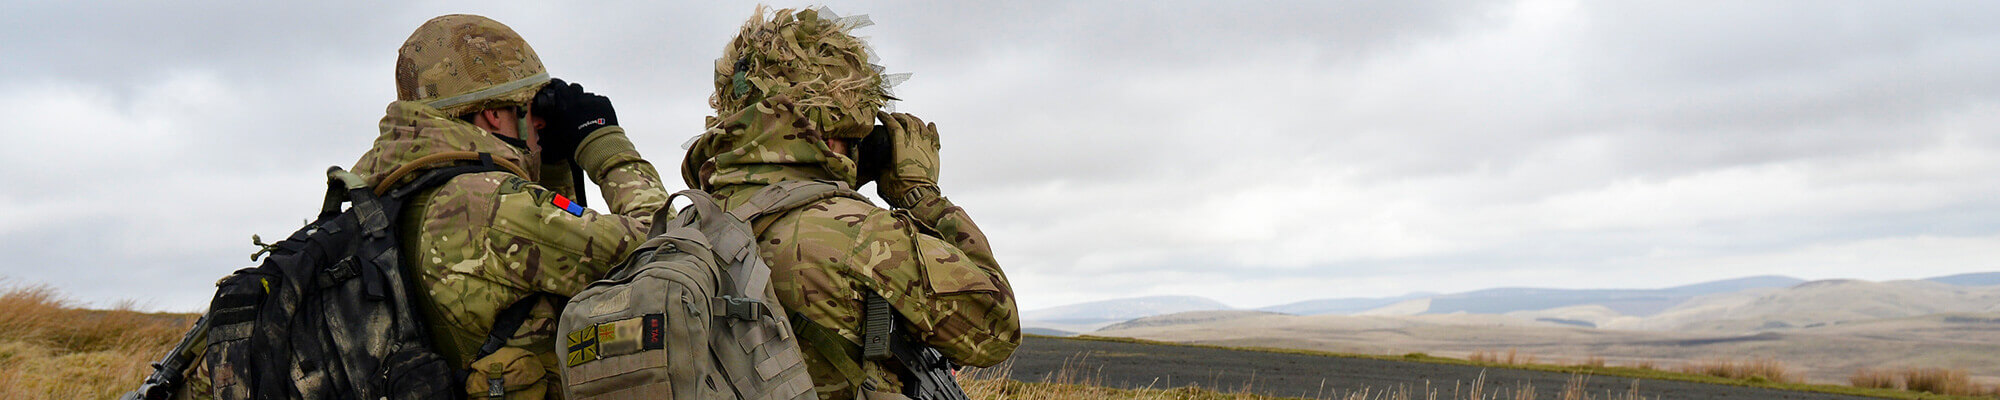 Two members of HM forces looking through binoculars